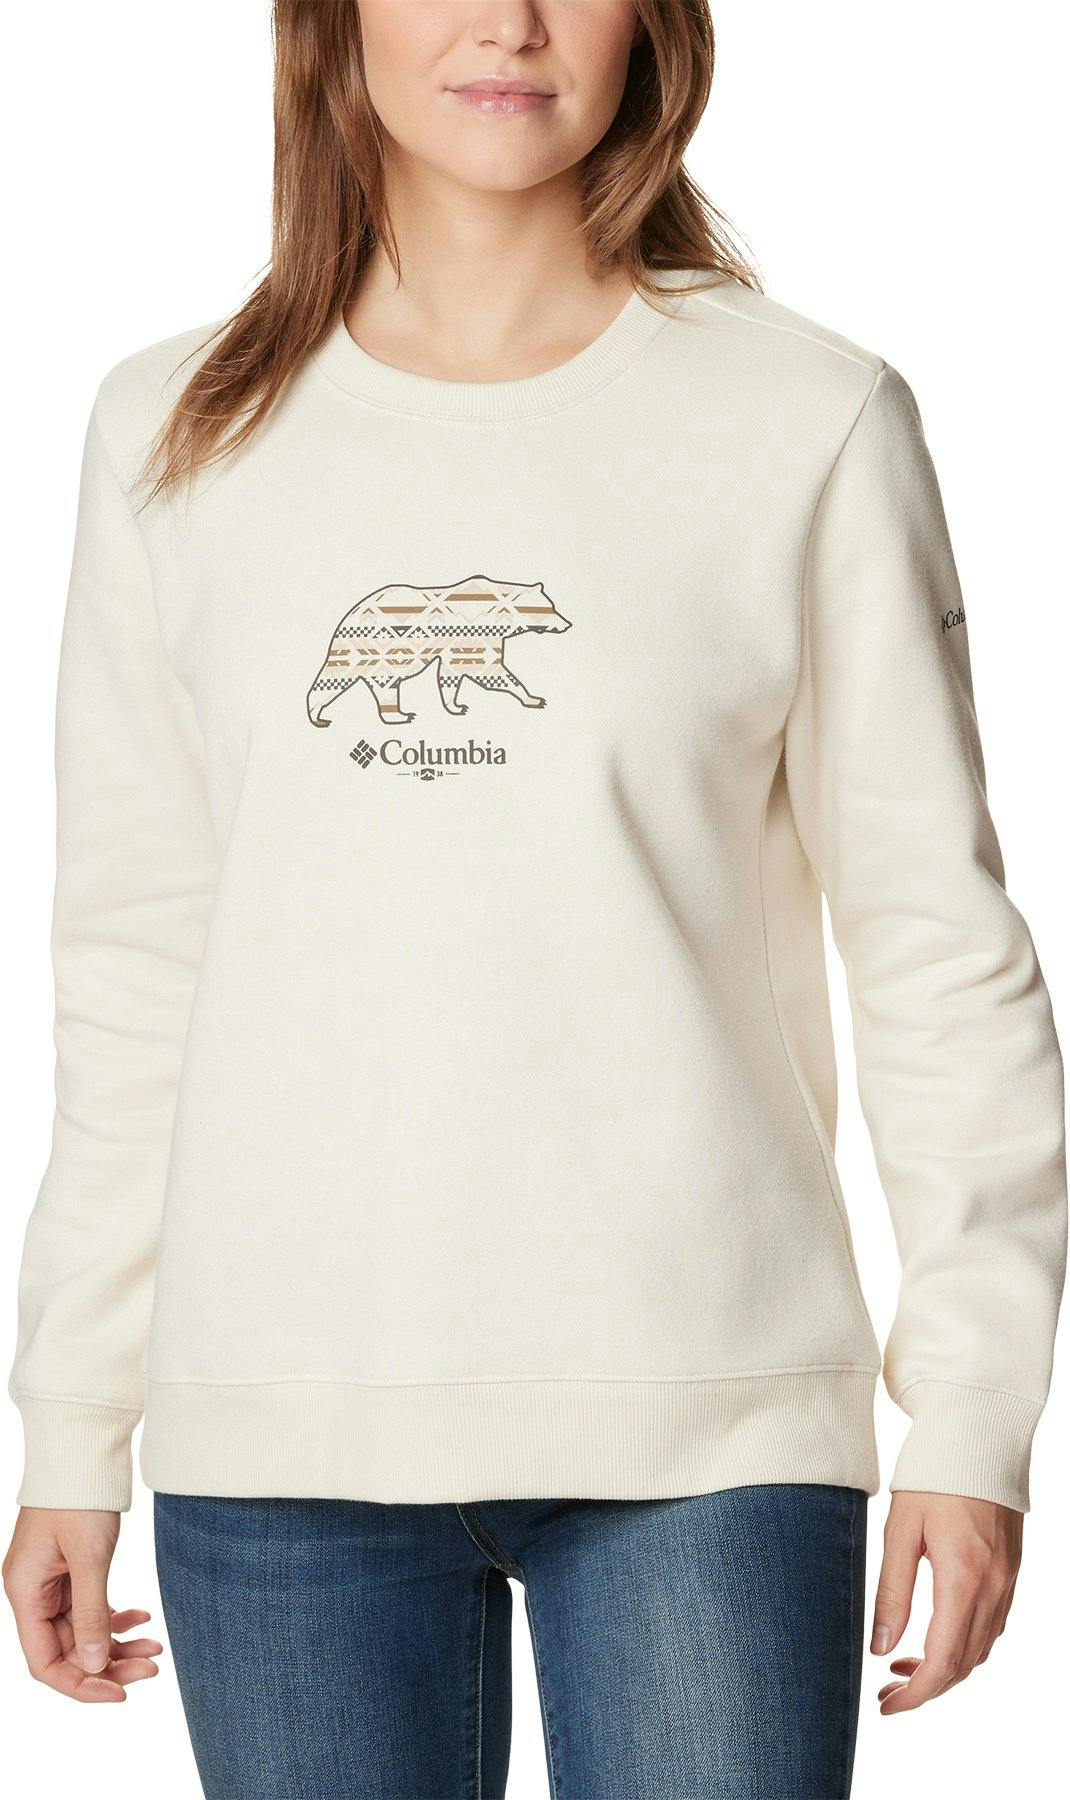 Product image for Hart Mountain II Graphic Crew Neck Sweatshirt - Women's